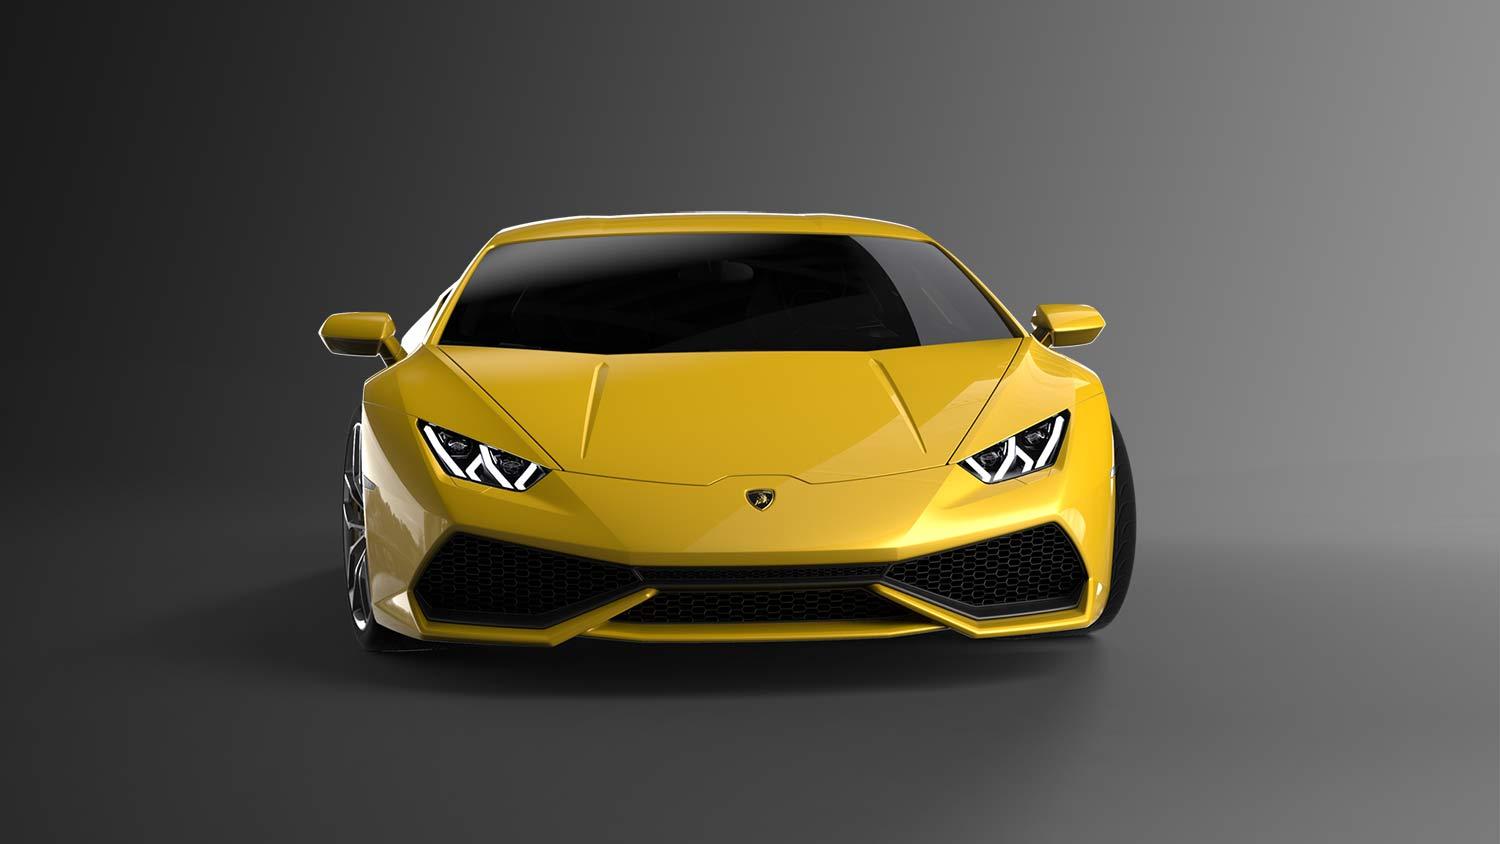 Lamborghini Huracan exterior front yellow